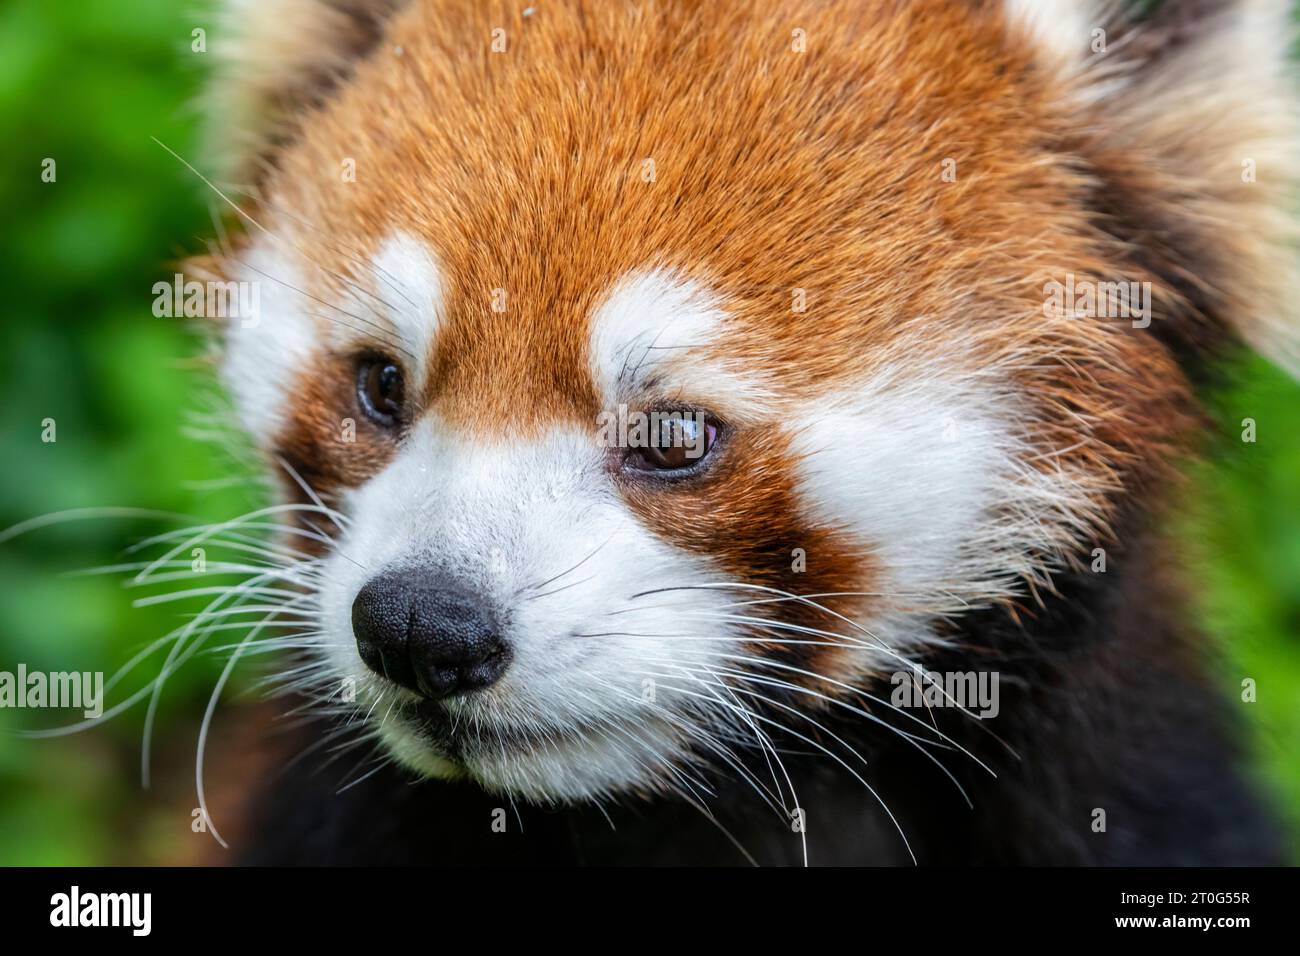 Ein roter Panda (Ailurus fulgens), Nahaufnahme, ein Säugetier, das im östlichen Himalaya und im Südwesten Chinas heimisch ist. Der rote Panda hat rötlich-braunes Fell. Stockfoto